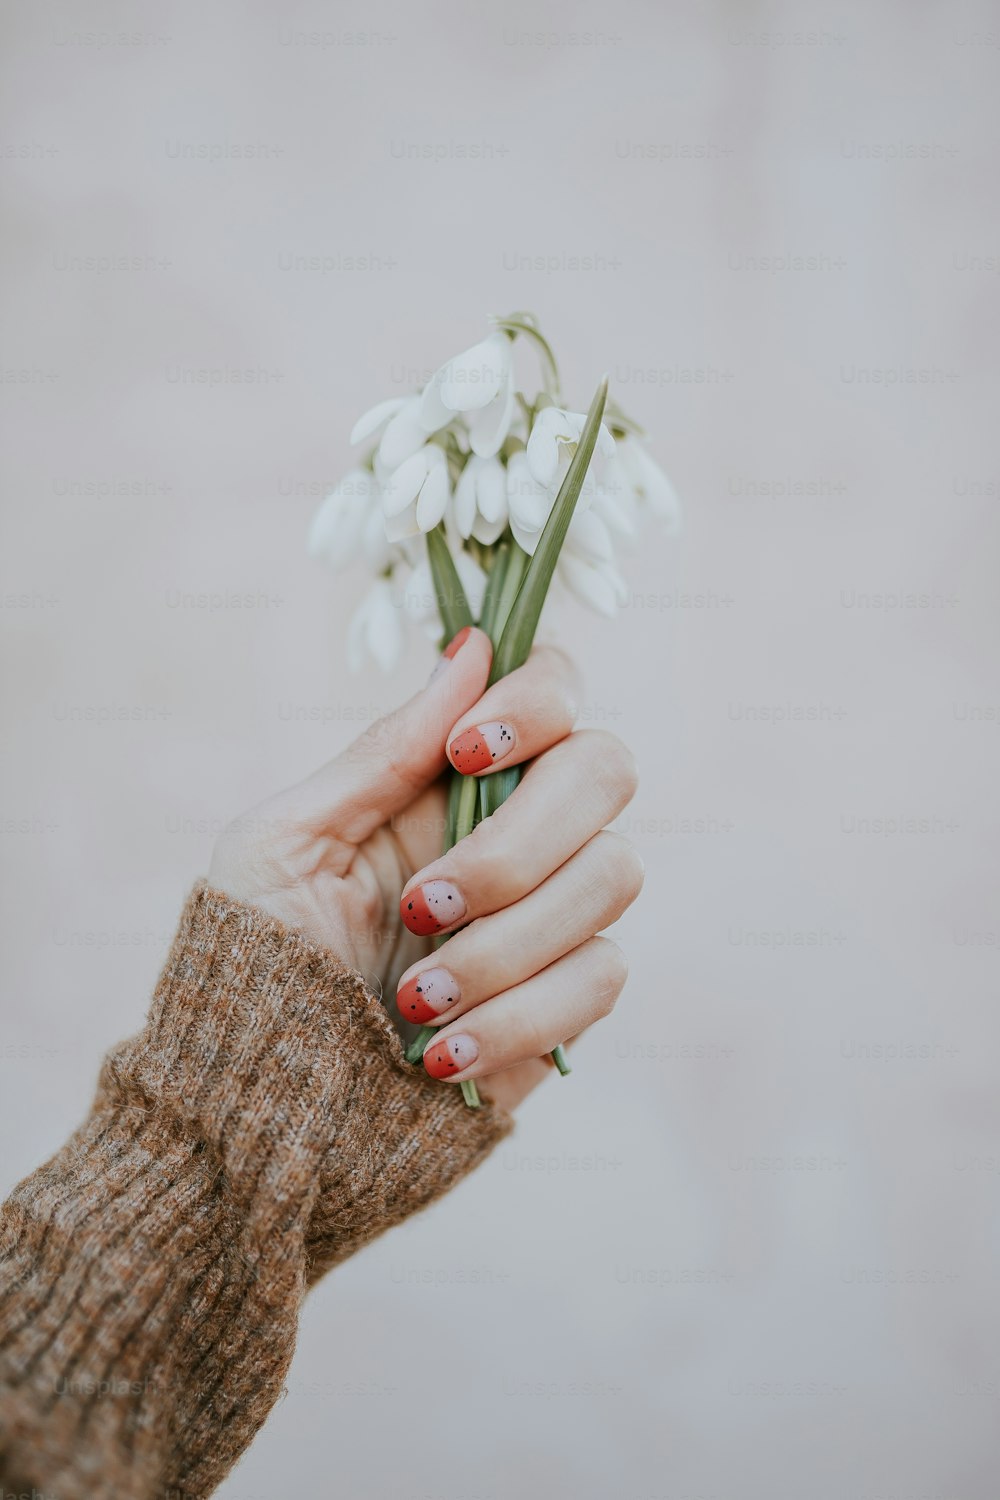 uma pessoa segurando uma flor branca